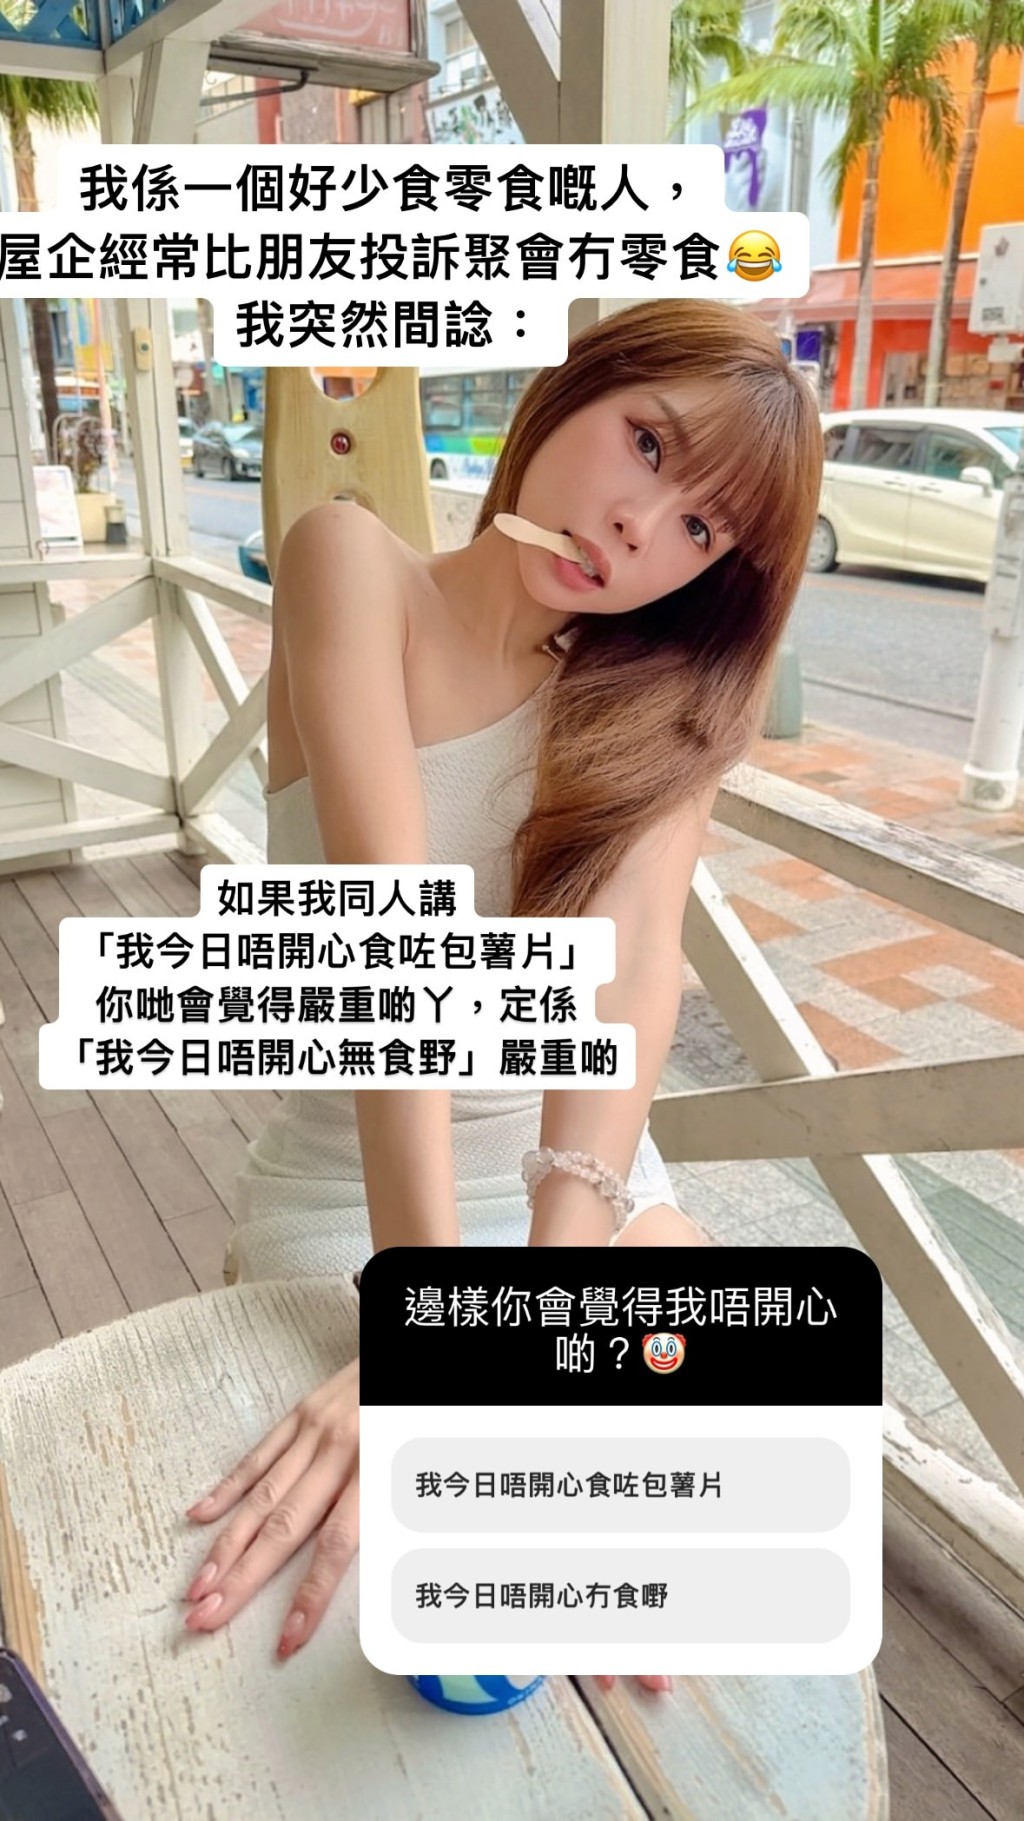 赵咏瑶回答网民问题。